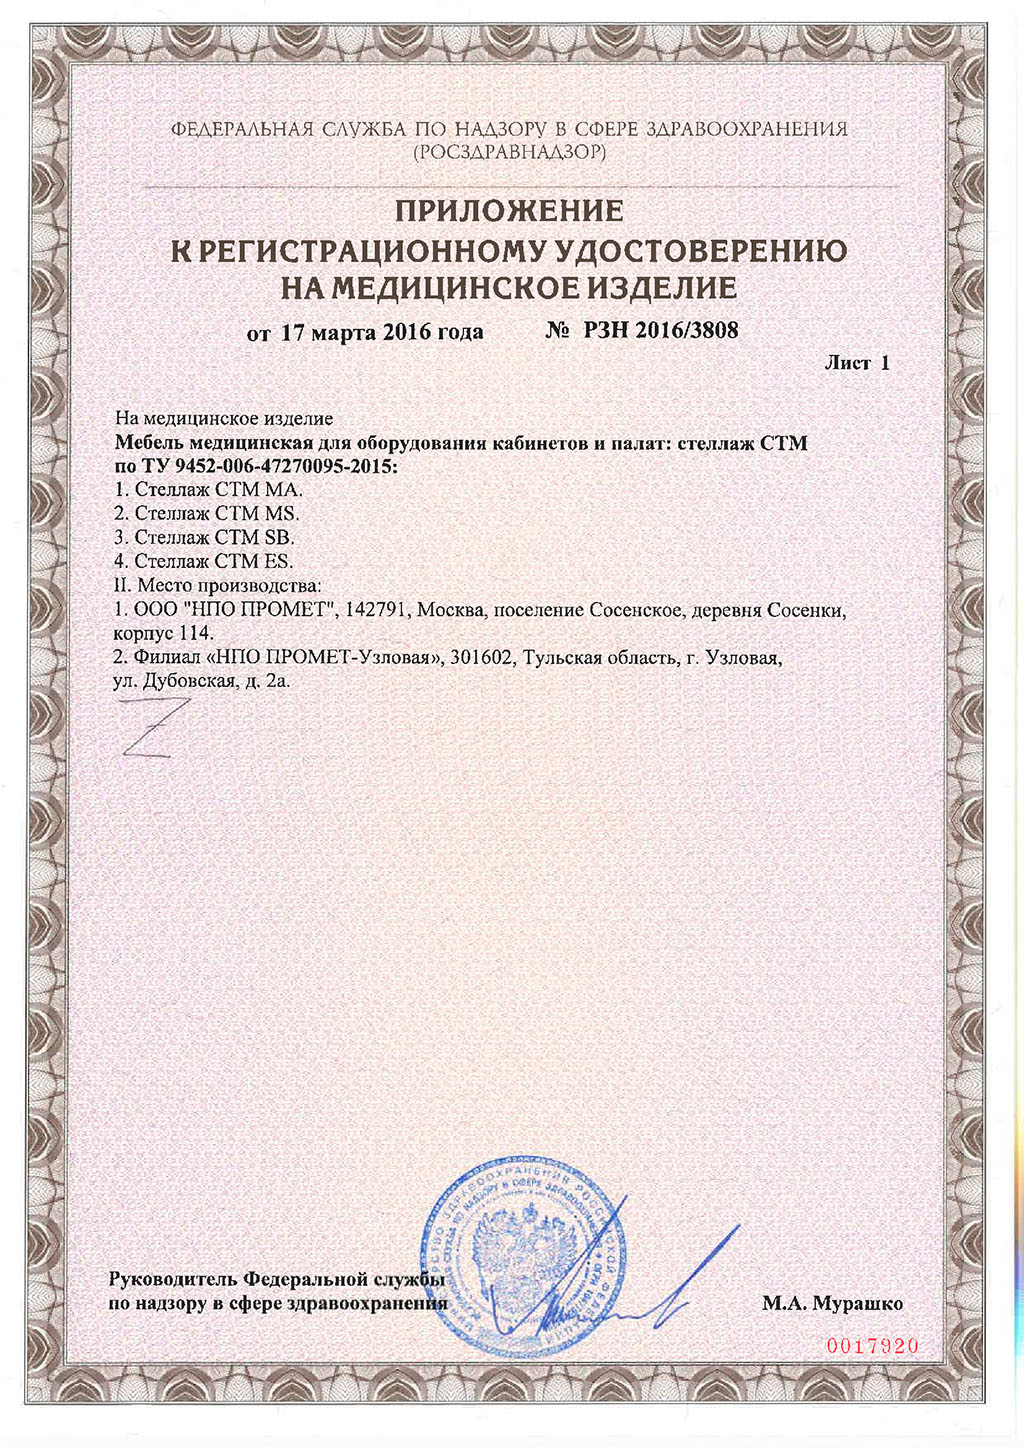 Pегистрационное-удостоверение-на-стеллажи-STM-2